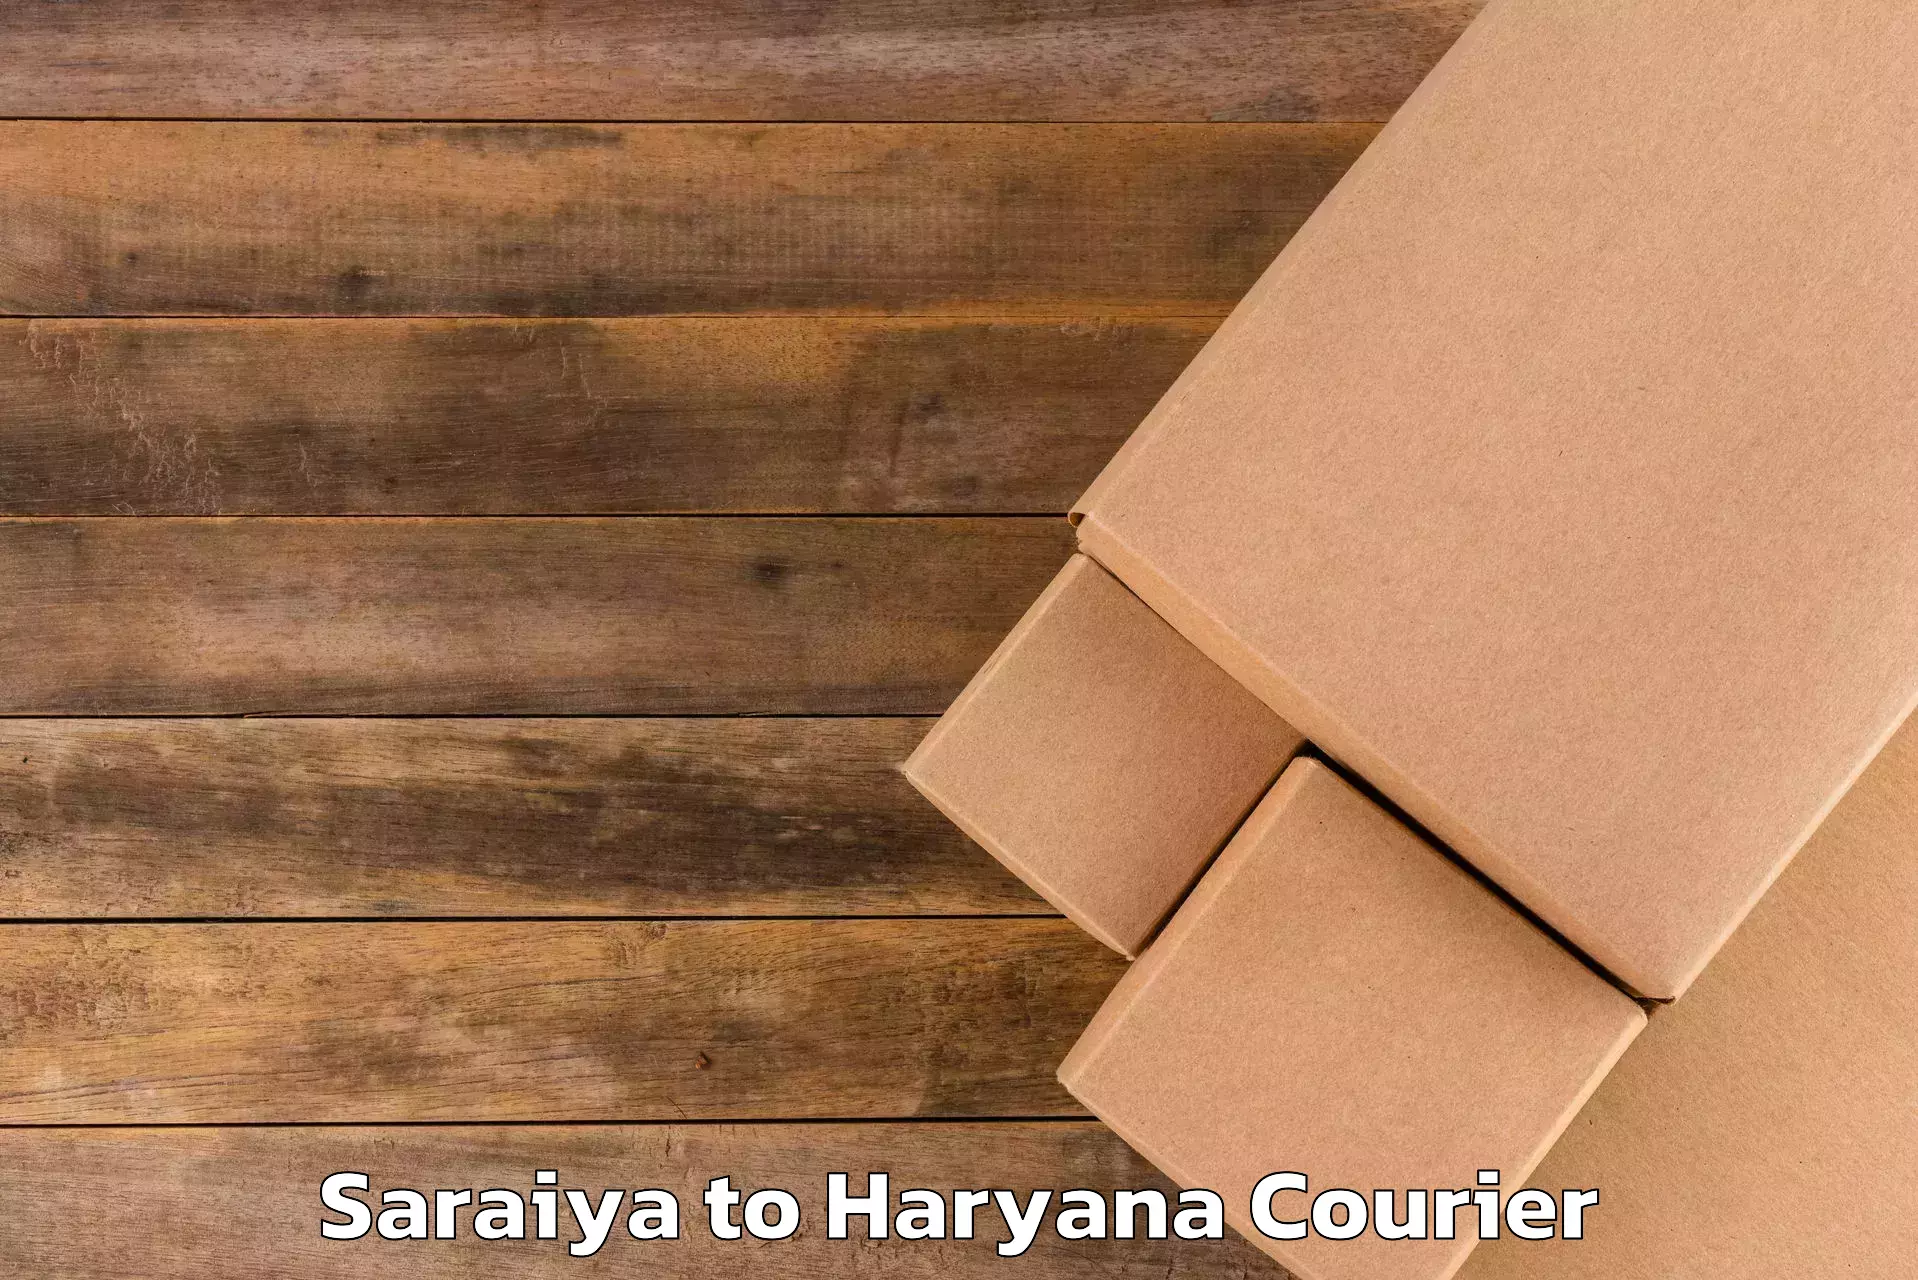 Luggage forwarding service Saraiya to Haryana